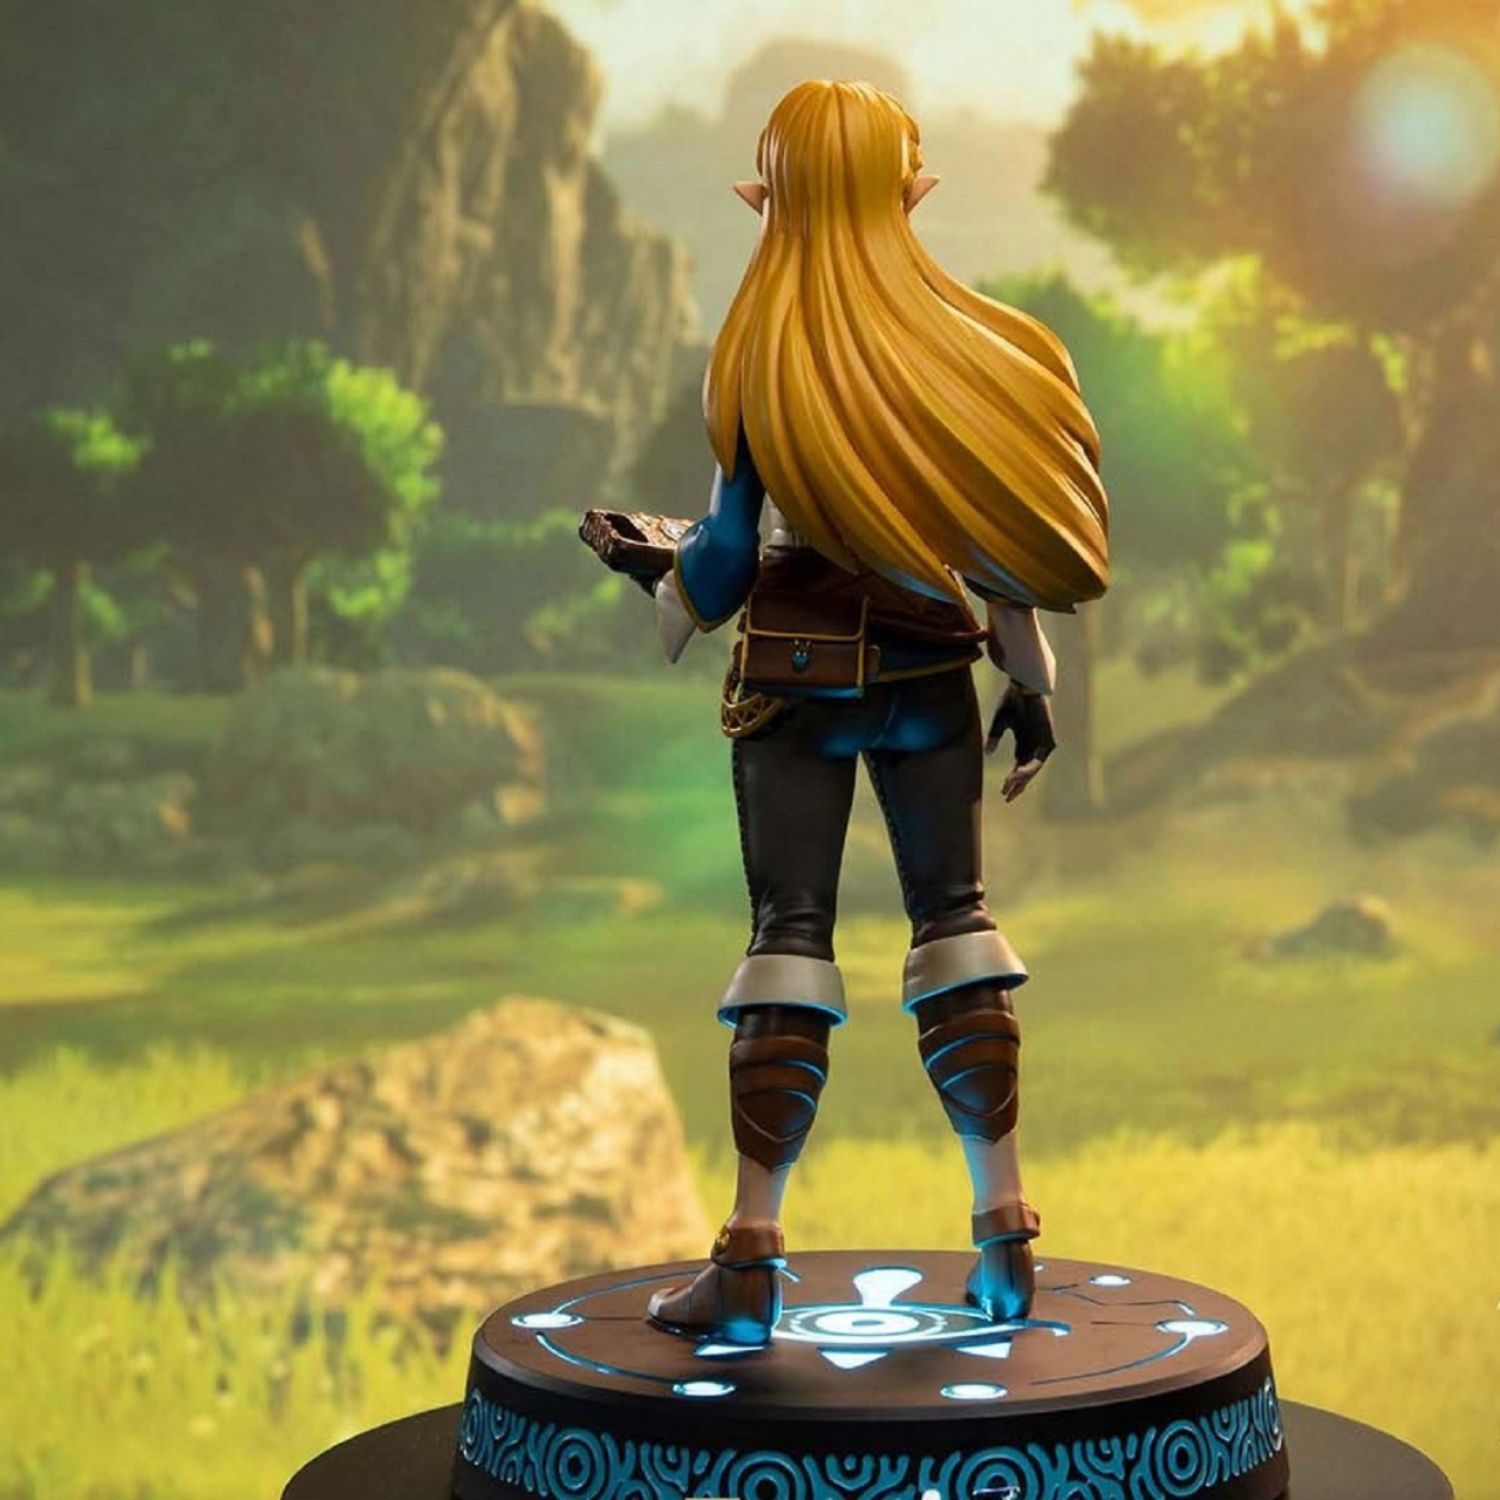 Legend of Zelda Figure Buying Guide –